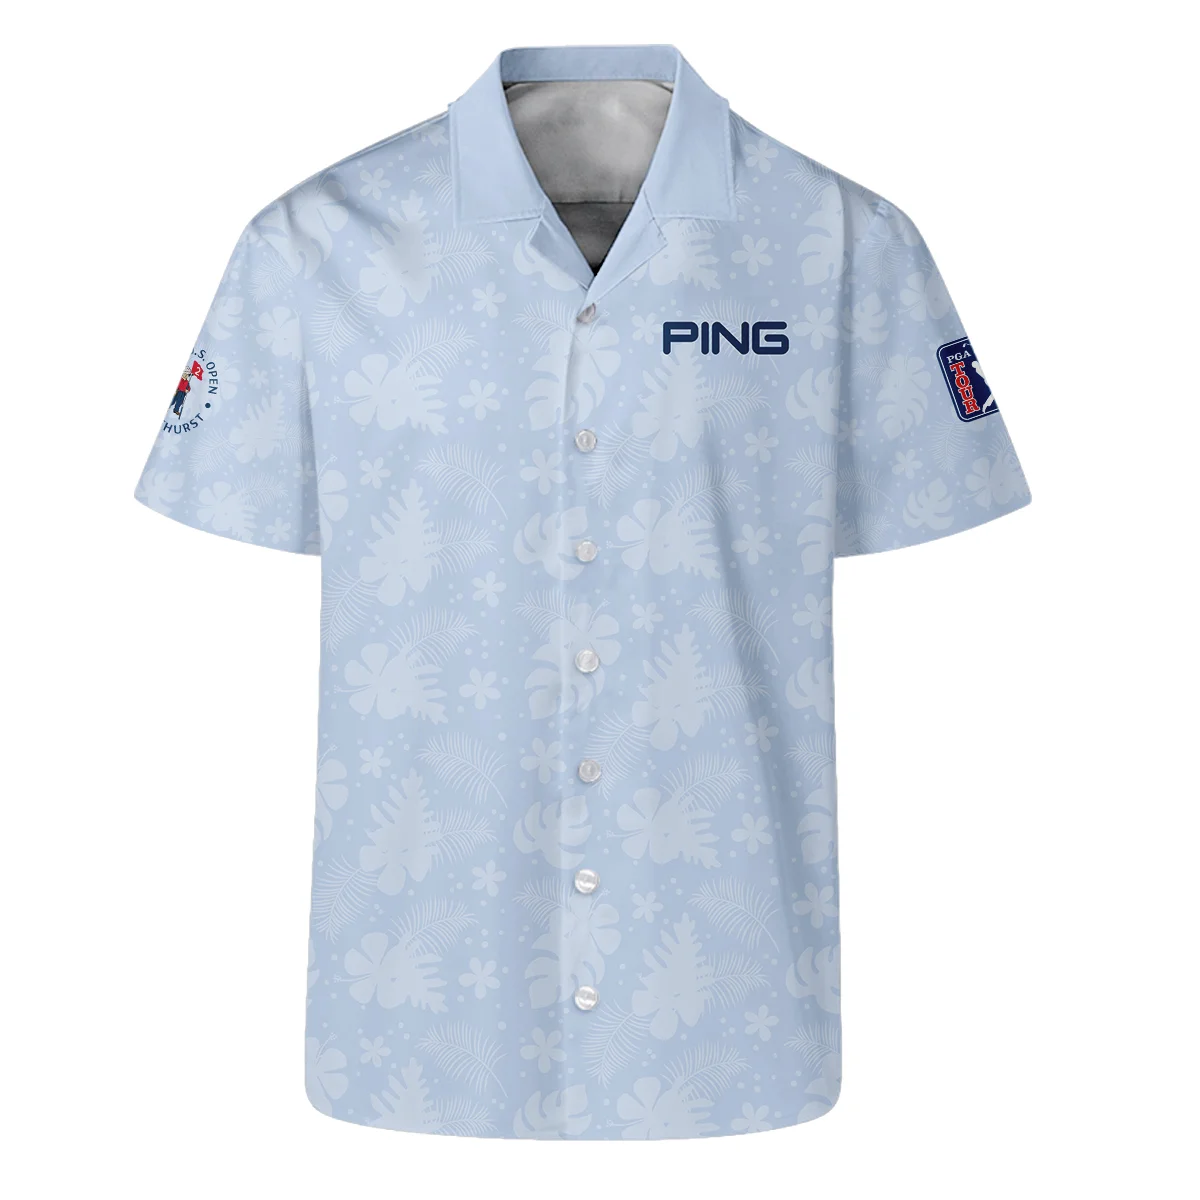 124th U.S. Open Pinehurst Ping Golf Zipper Polo Shirt Light Blue Pastel Floral Hawaiian Pattern All Over Print Zipper Polo Shirt For Men